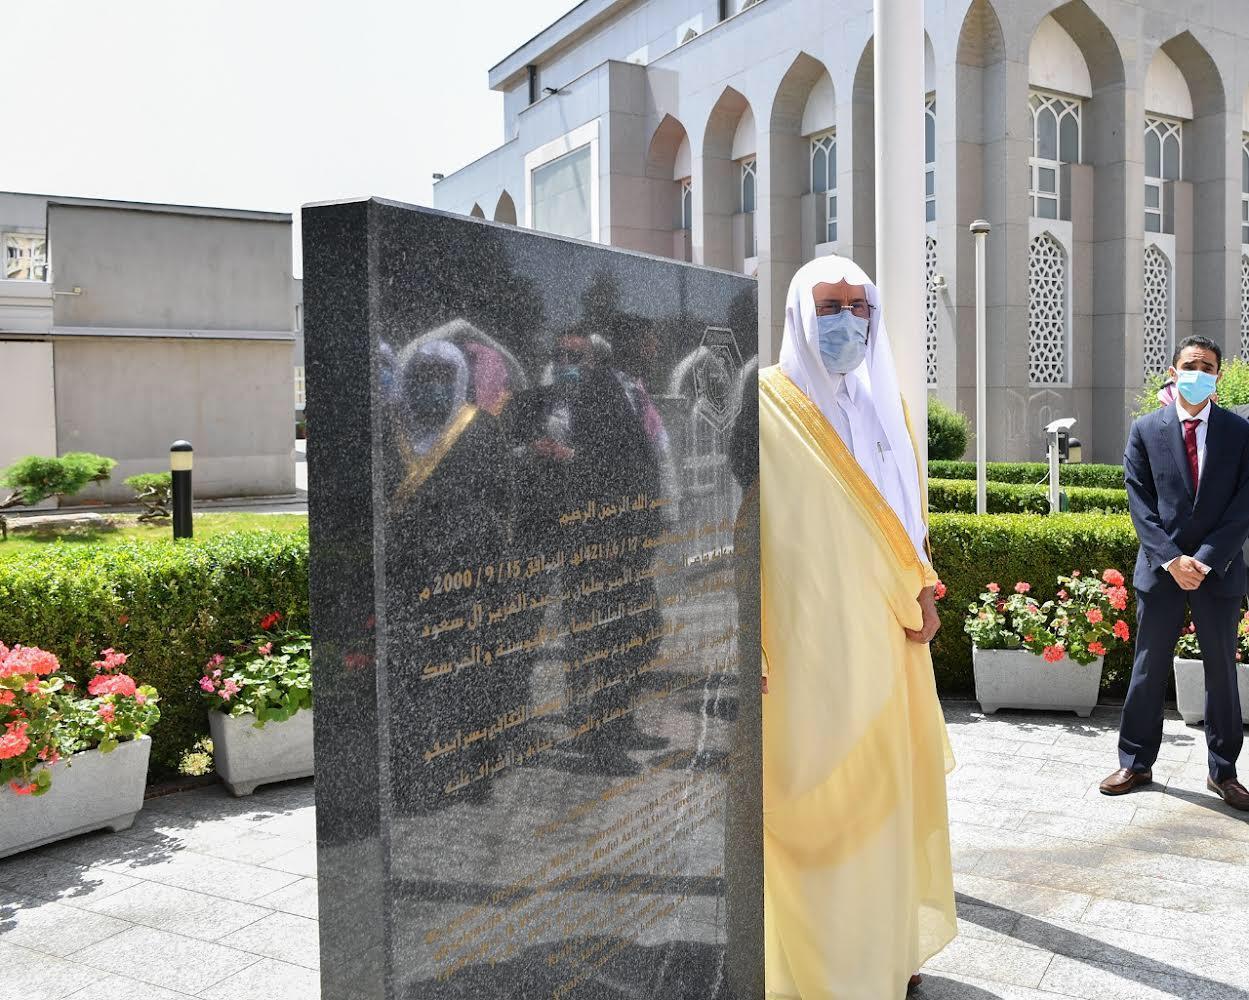 وزير الشؤون الإسلامية يزور جامع الملك فهد بسراييفو